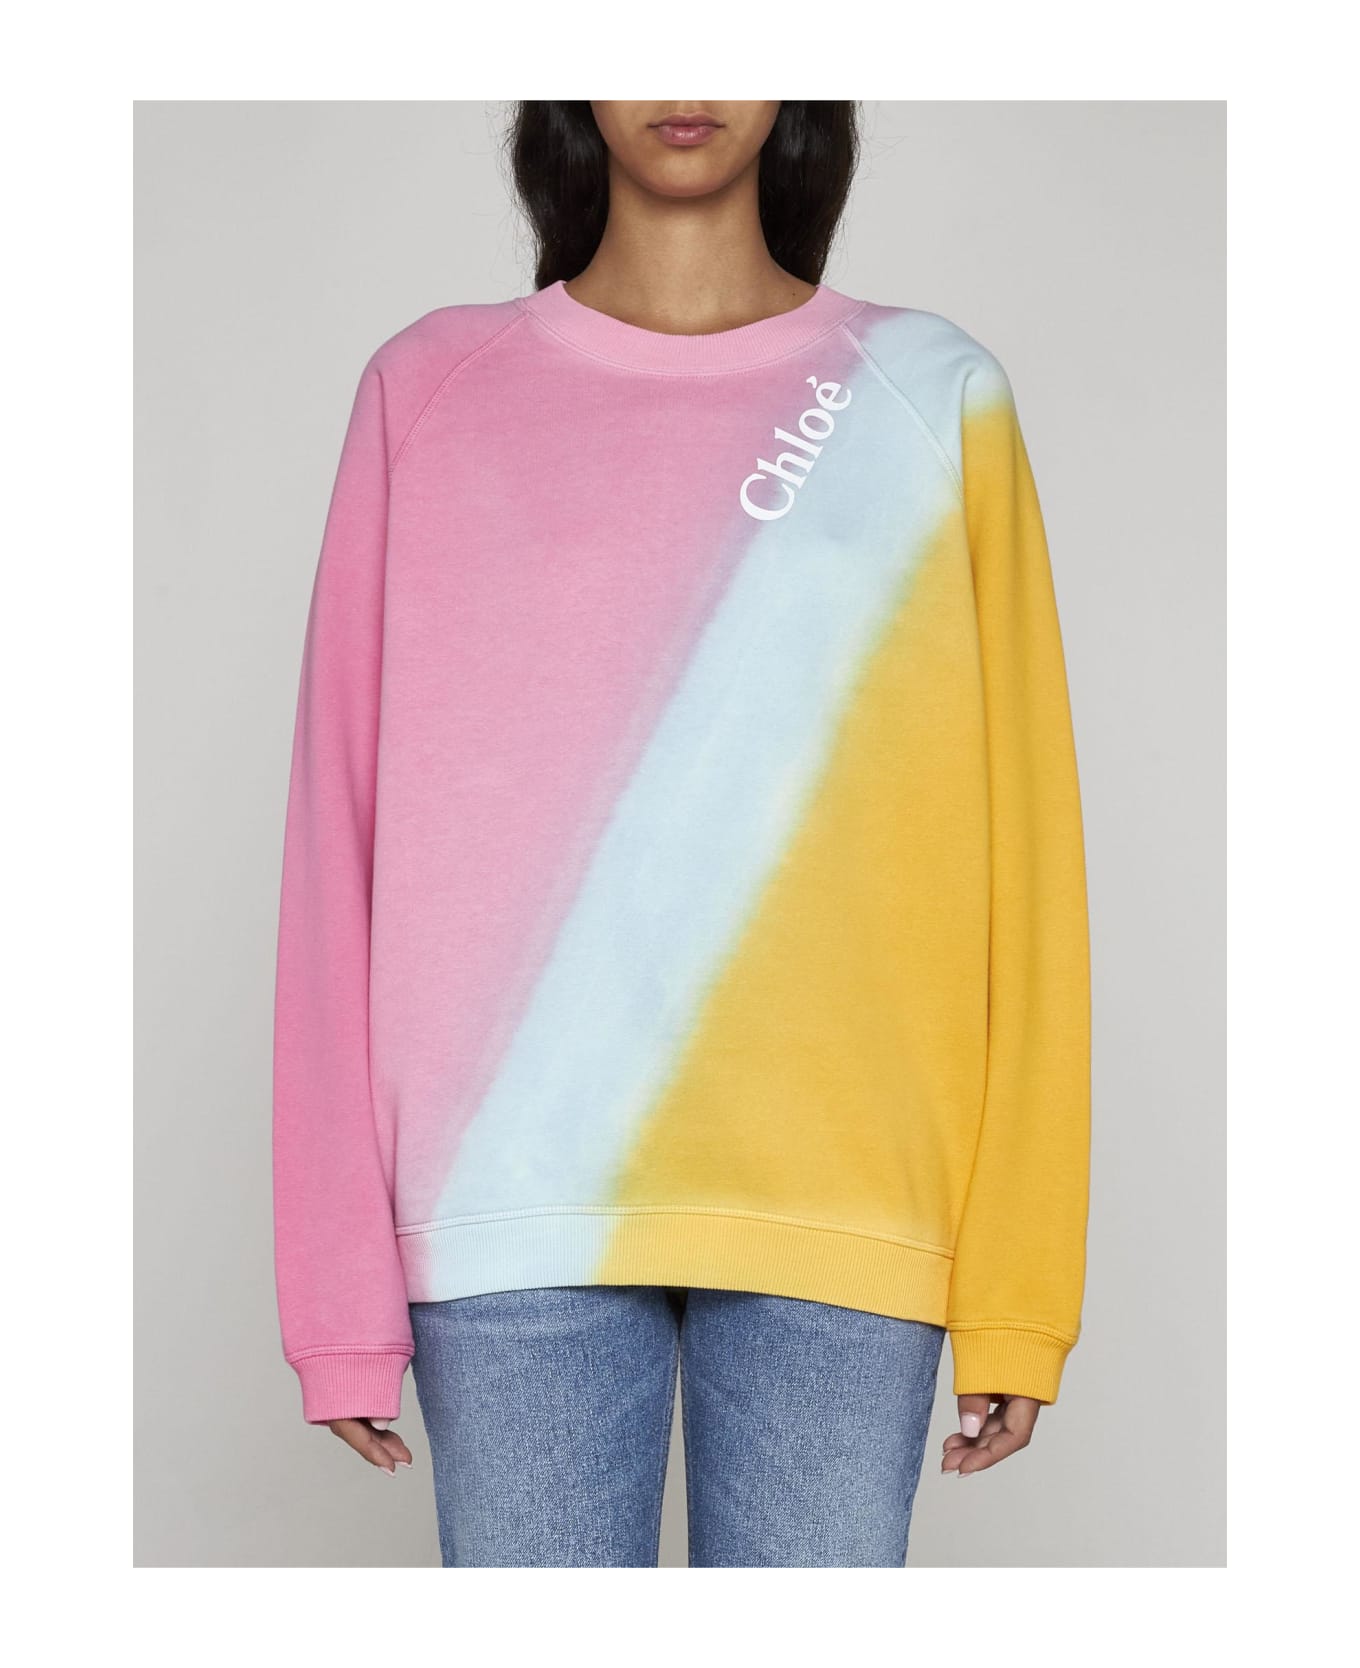 Chloé Cotton Sweatshirt - Multicolor Pink